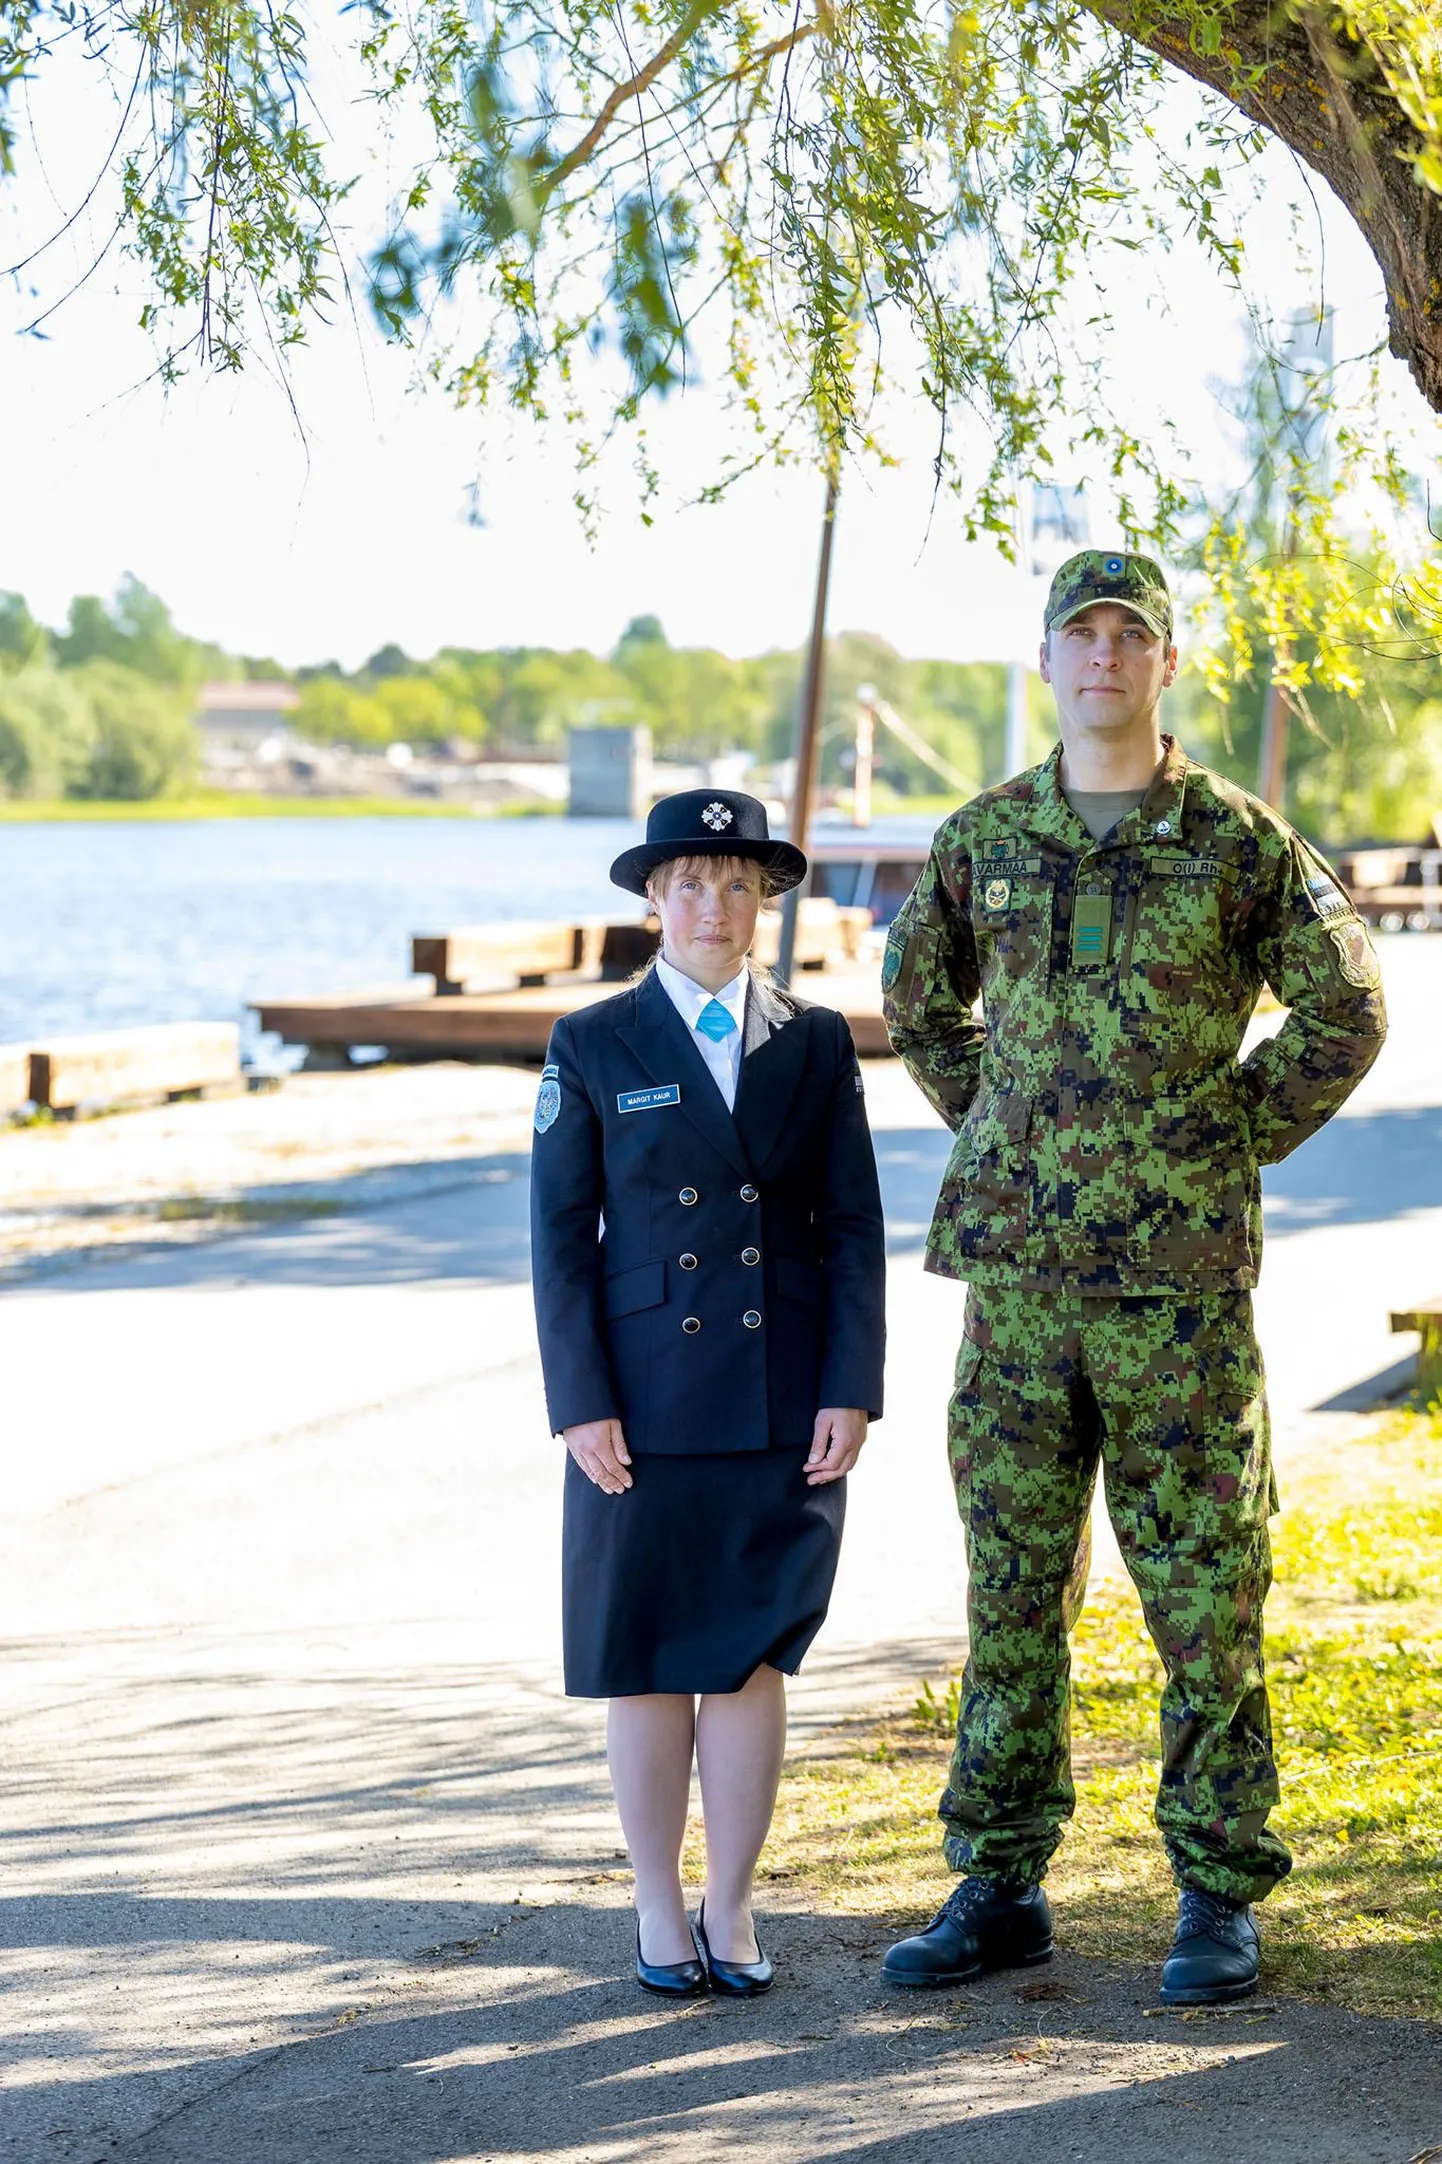 Kaitseliidu paraadilt Narvas toovad võidutule Pärnu naiskodukaitsja Margit Kaur ja kaitseliitlane Priit Avarmaa, mõlemad on tublid laskurid.